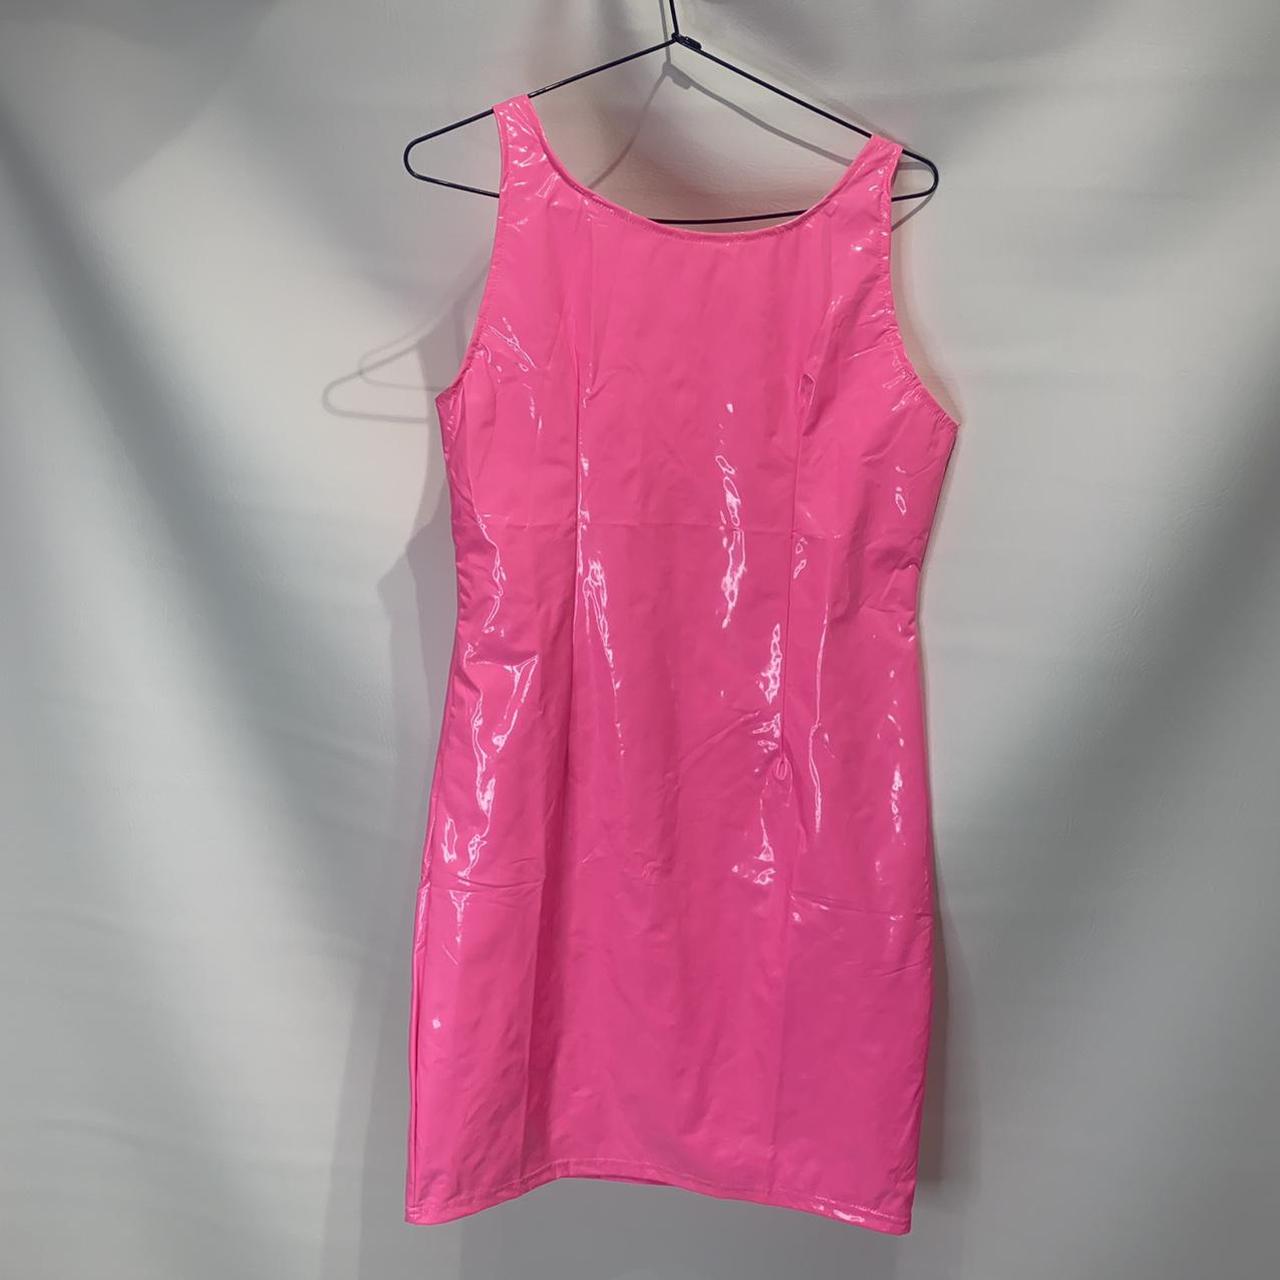 Pink PVC dress Small Never worn #pinkdress... - Depop